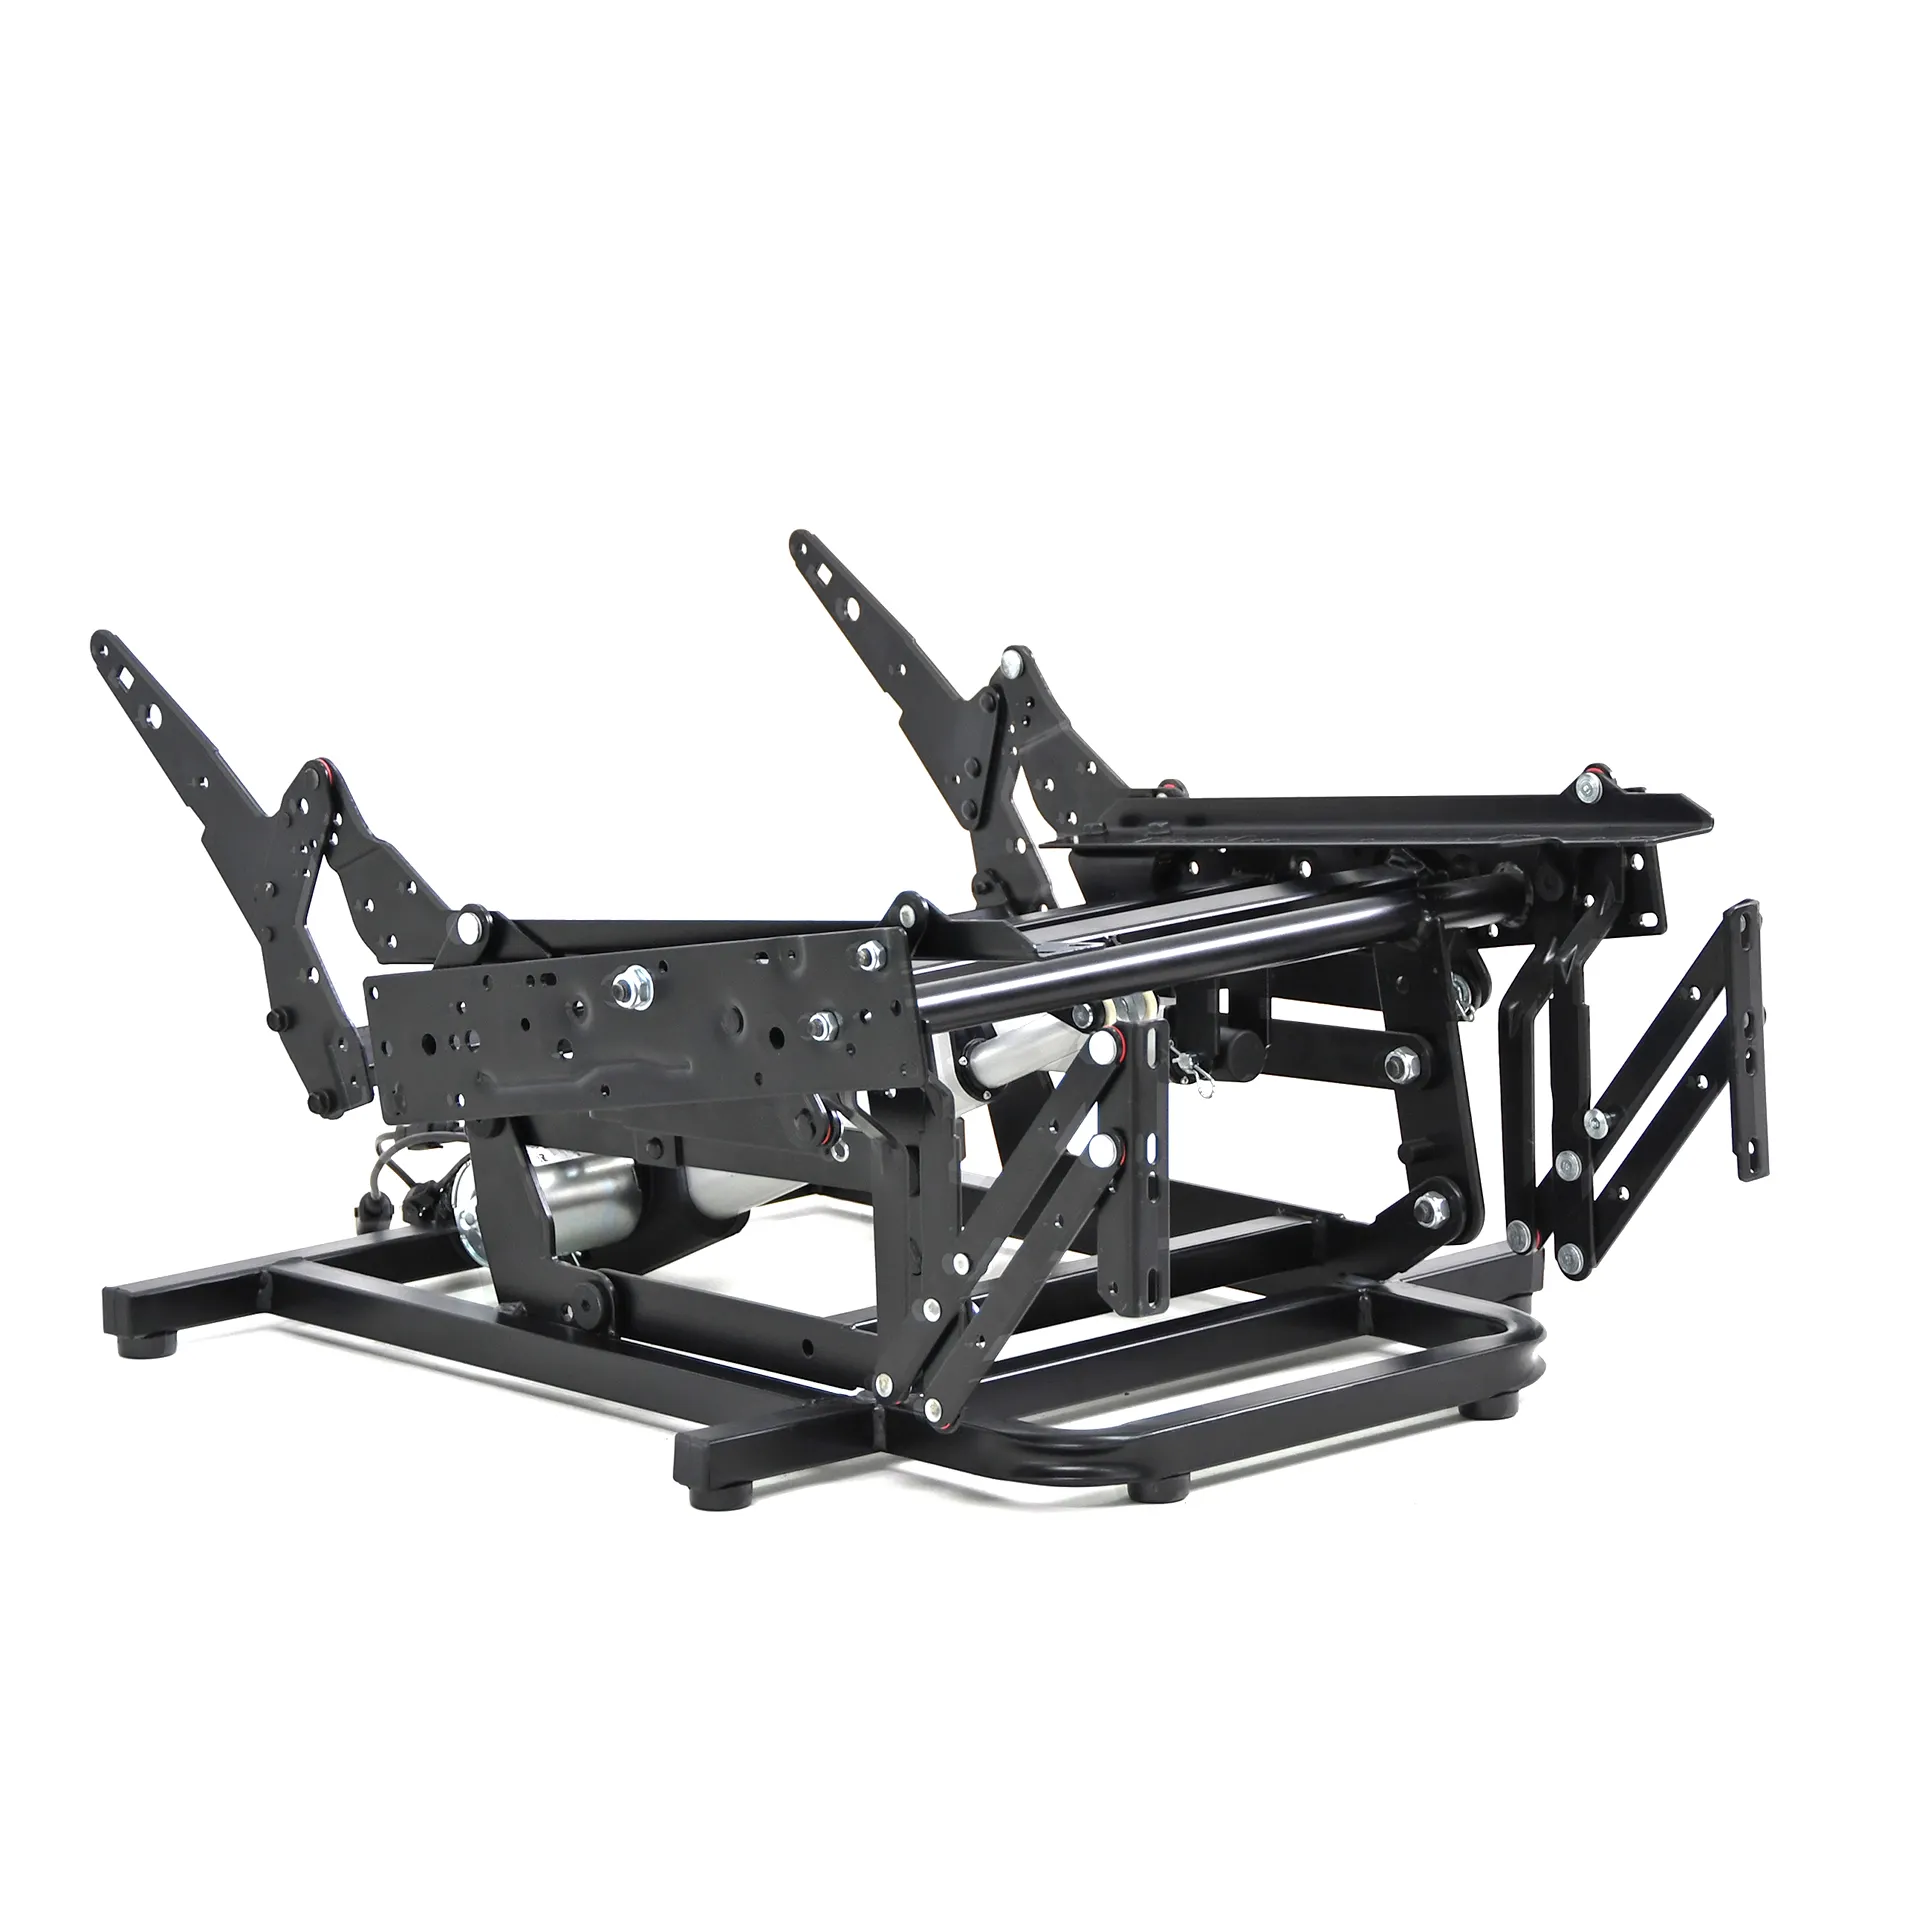 Rondure 6302 kaldırma sandalye mekanizmaları iki motorlu elektrik güç asansör kanepe mekanizması tabanı